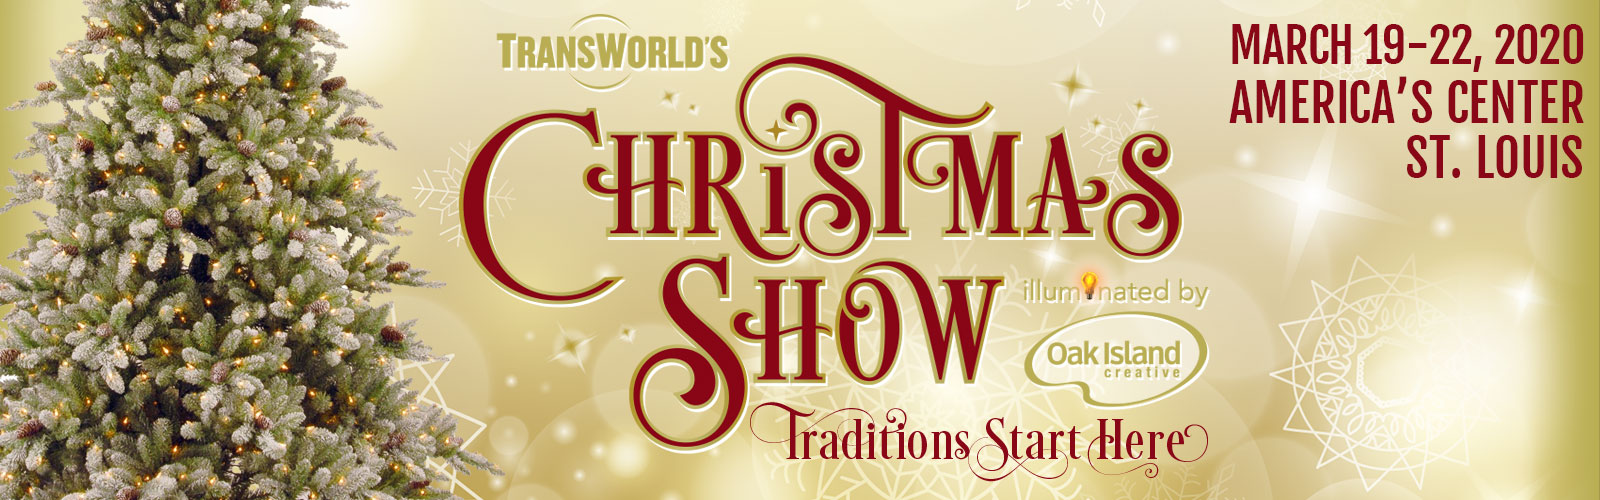 TransWorld's Christmas Show